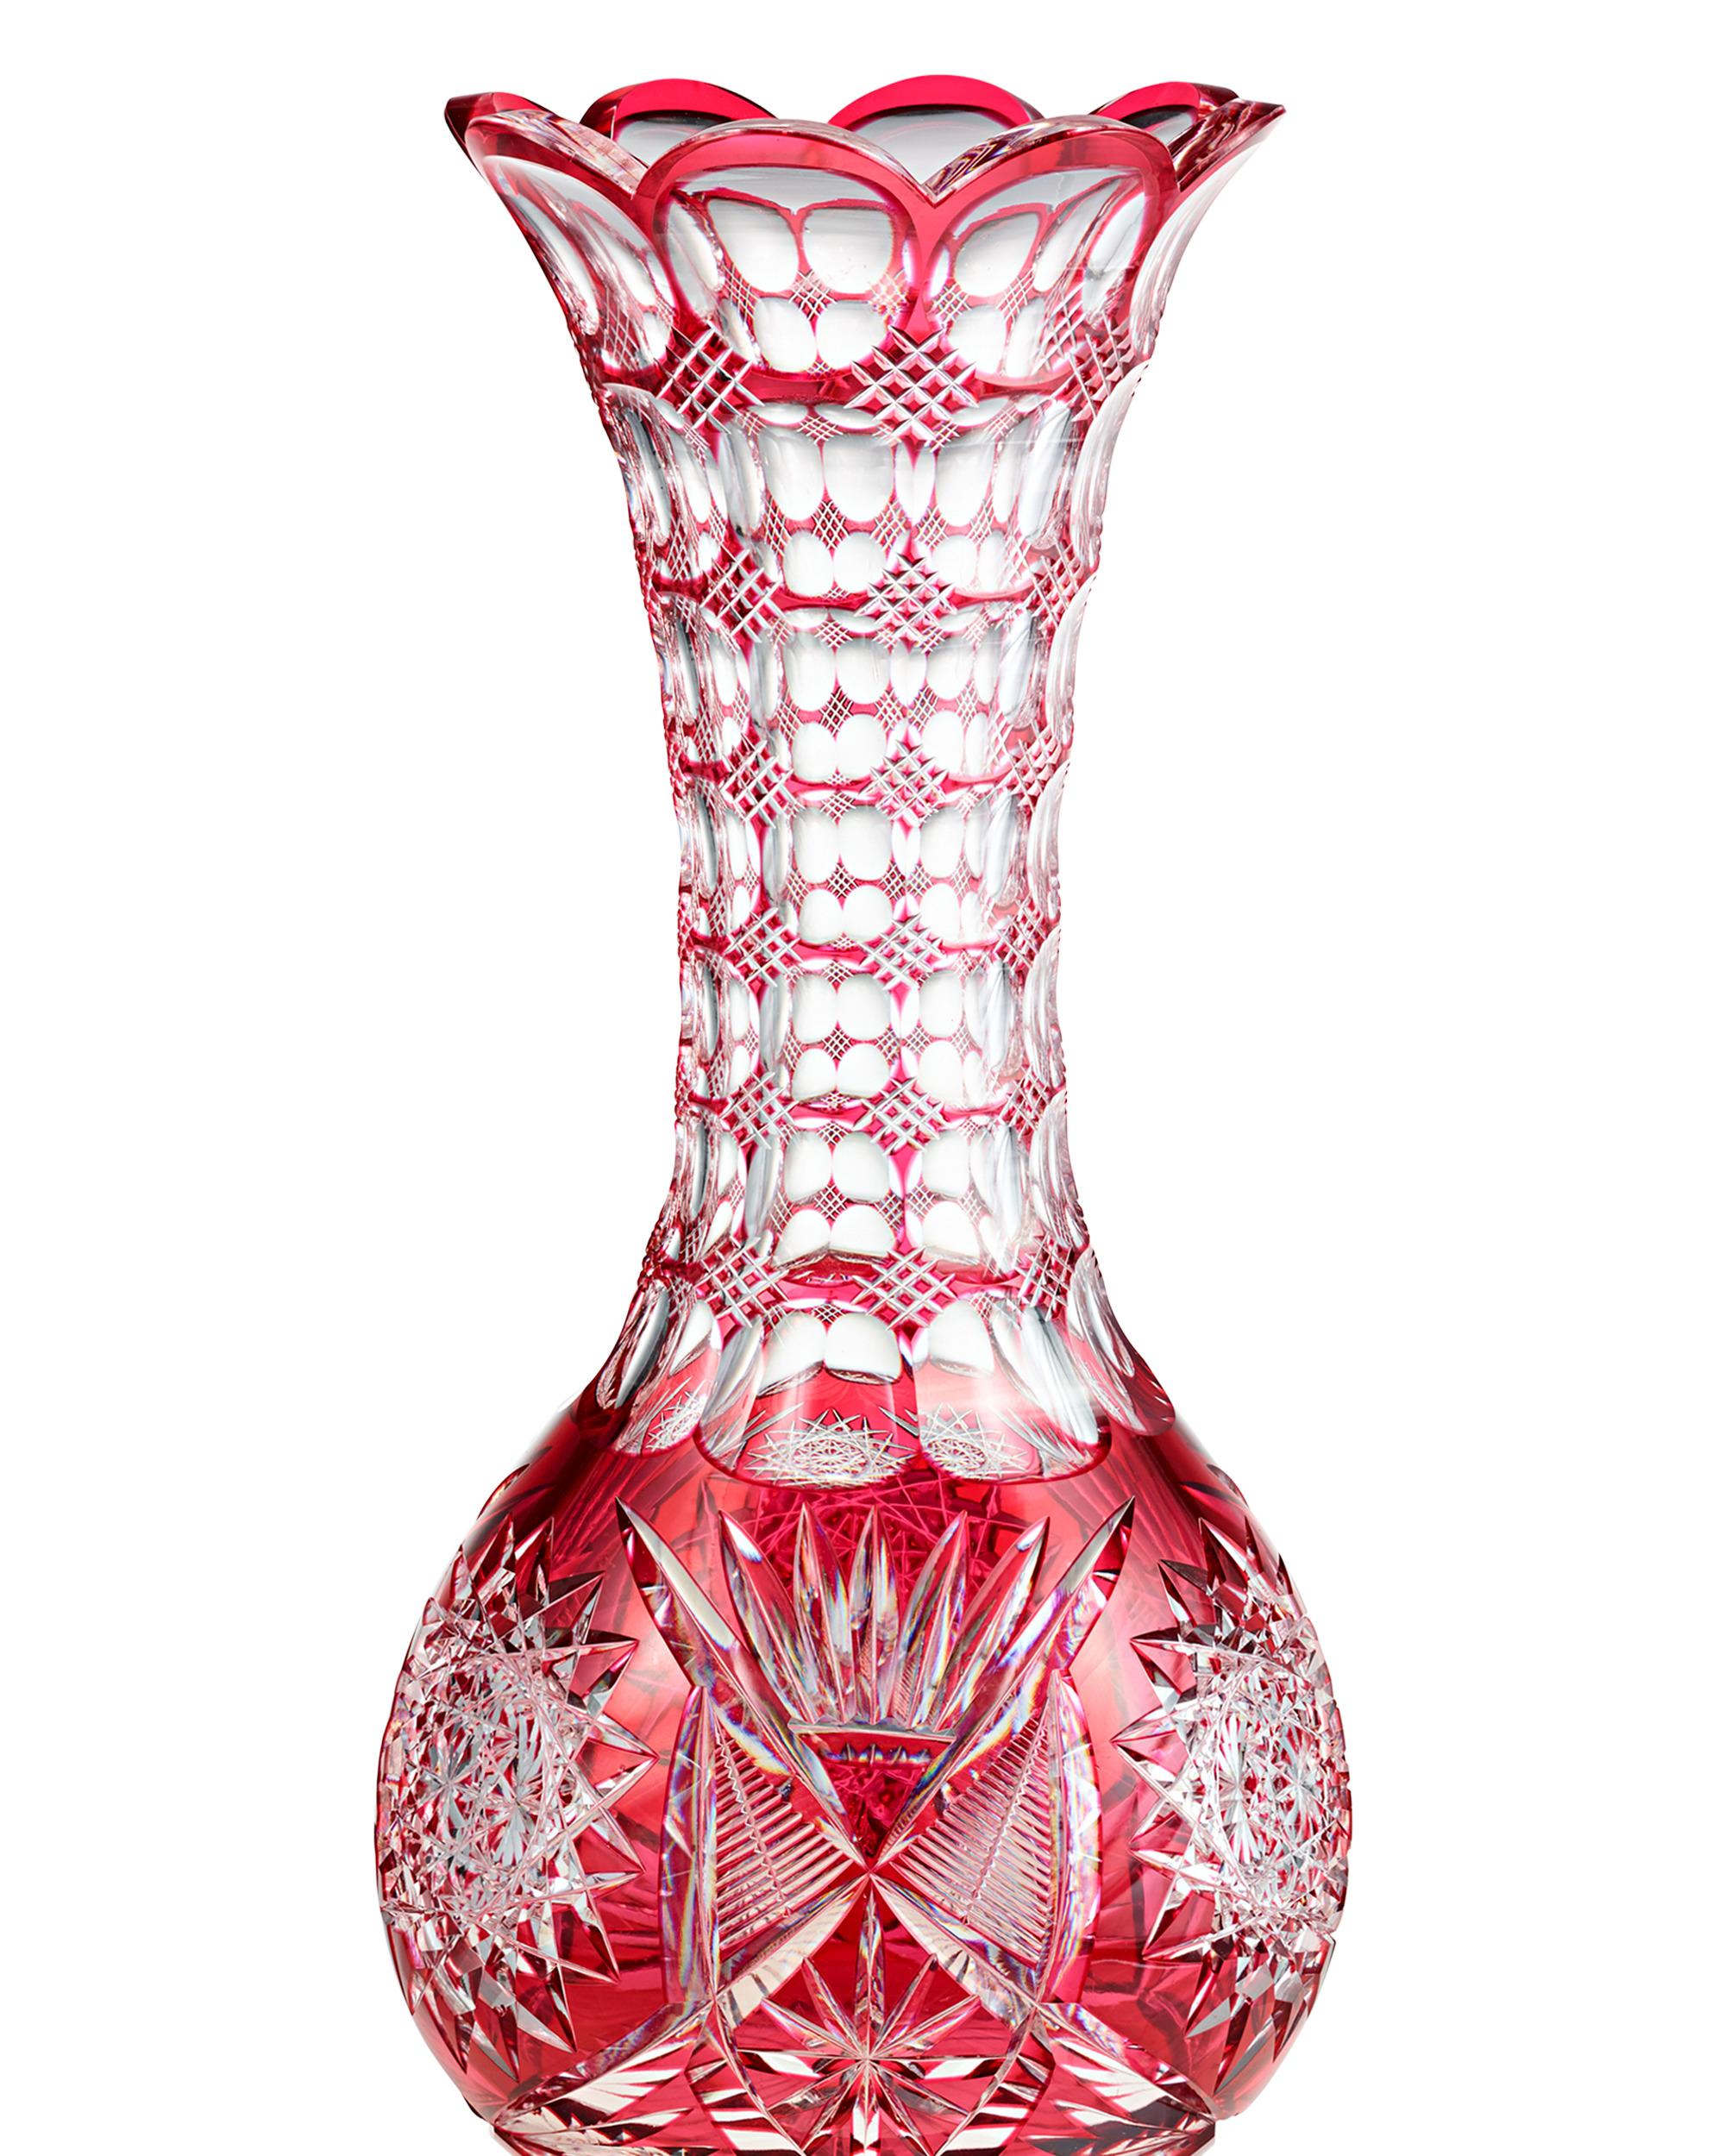 Diese bemerkenswert exquisite Vase aus geschliffenem Glas wurde von einer der ältesten Glashütten in den Vereinigten Staaten, Pairpoint, hergestellt. Das aufwändige Schliffdekor ist in einem geometrischen Muster von einem auffallend leuchtenden Rot